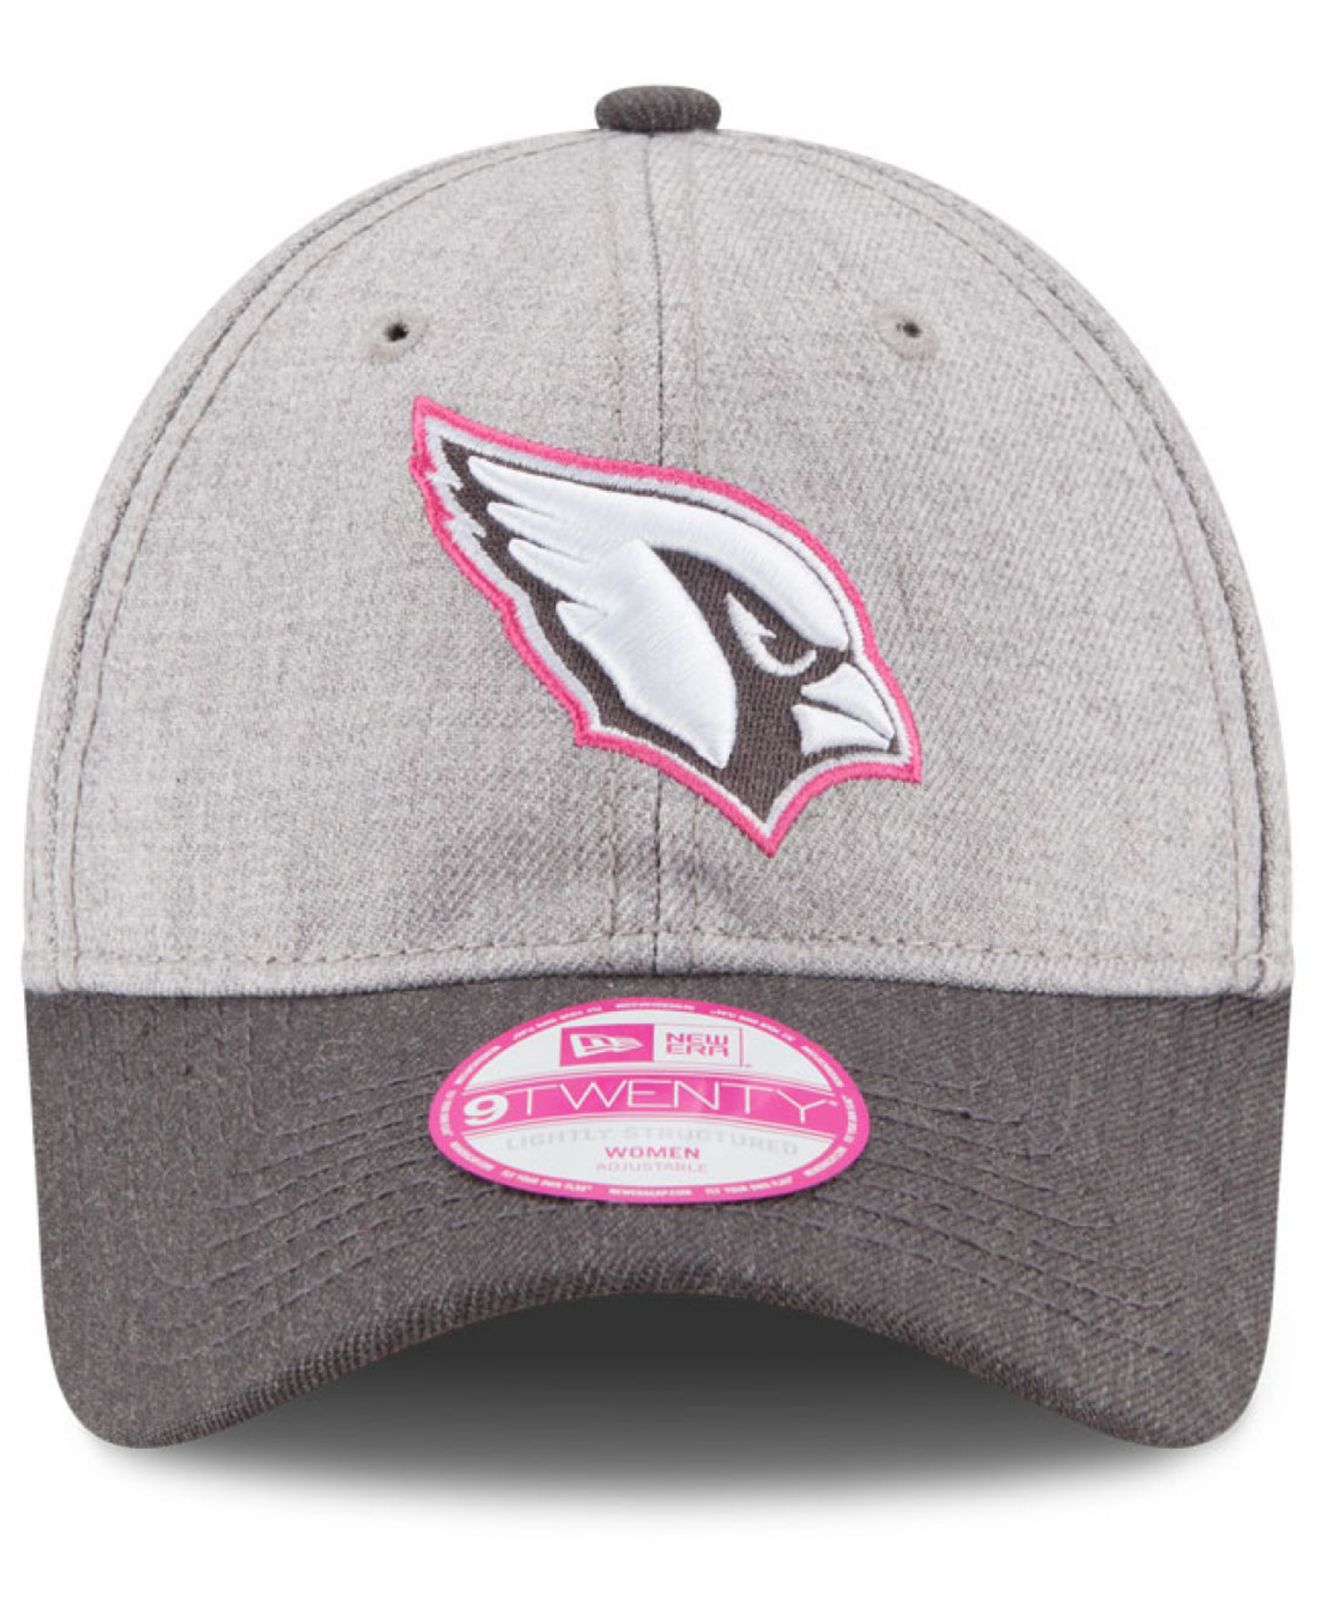 arizona cardinals pink hat